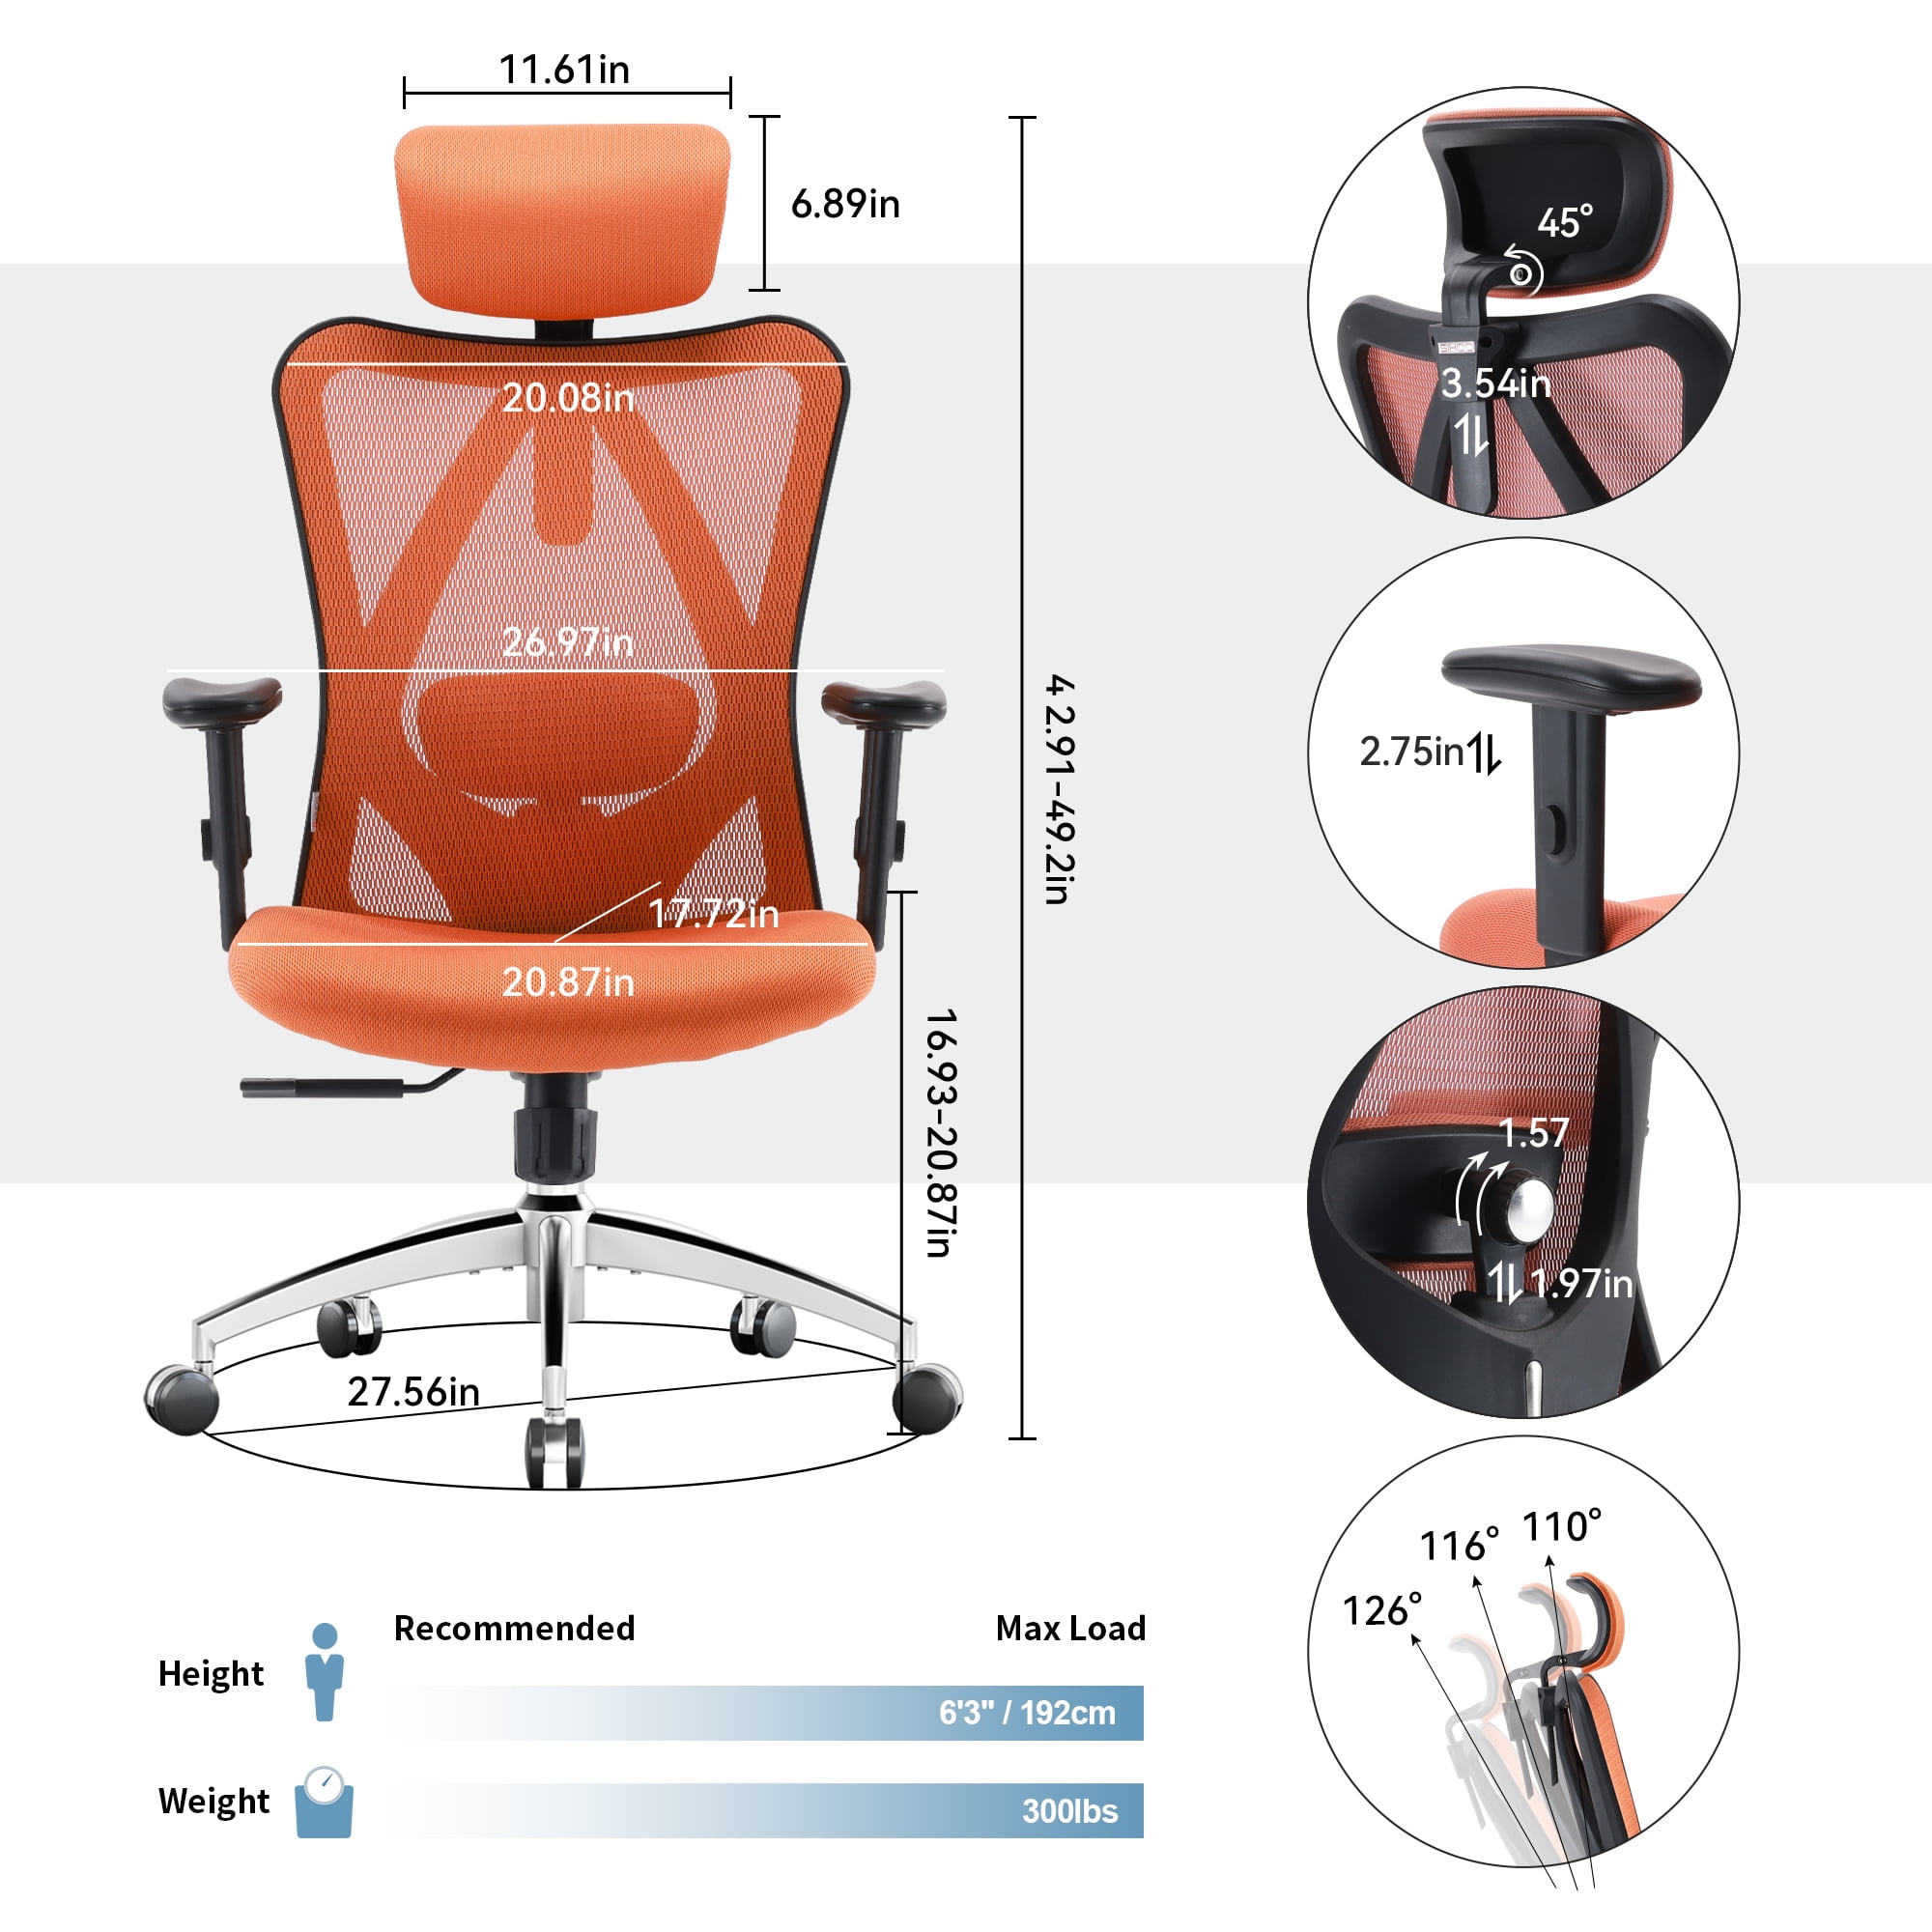 For Sale: SIHOO M18 Ergonomic Office Chair - New Kingston